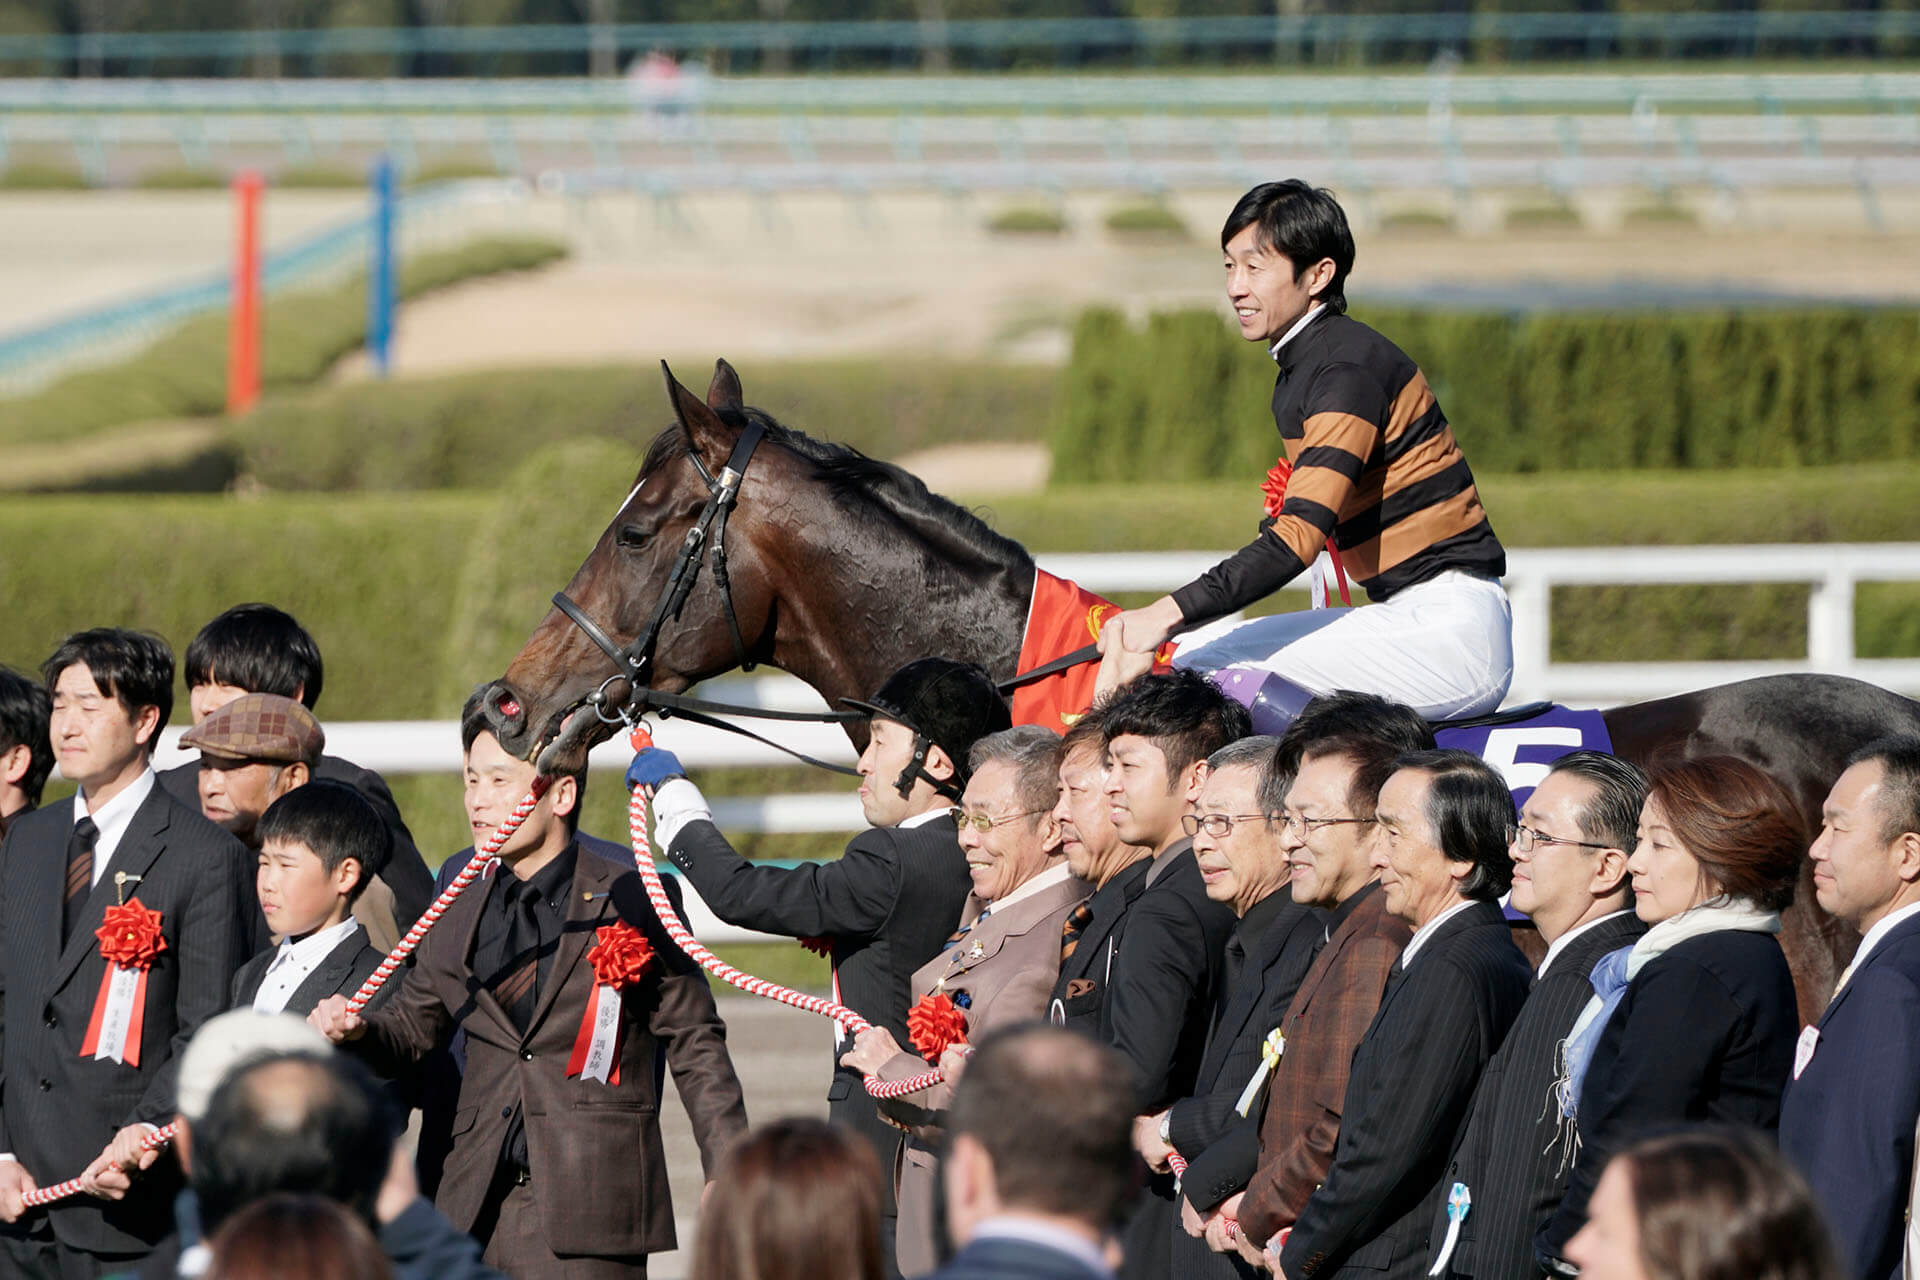 大阪杯 18 予想 前哨戦をまとめてみた 関係者のコメント付き 出走予定馬など 競馬予想のキングスポーツ